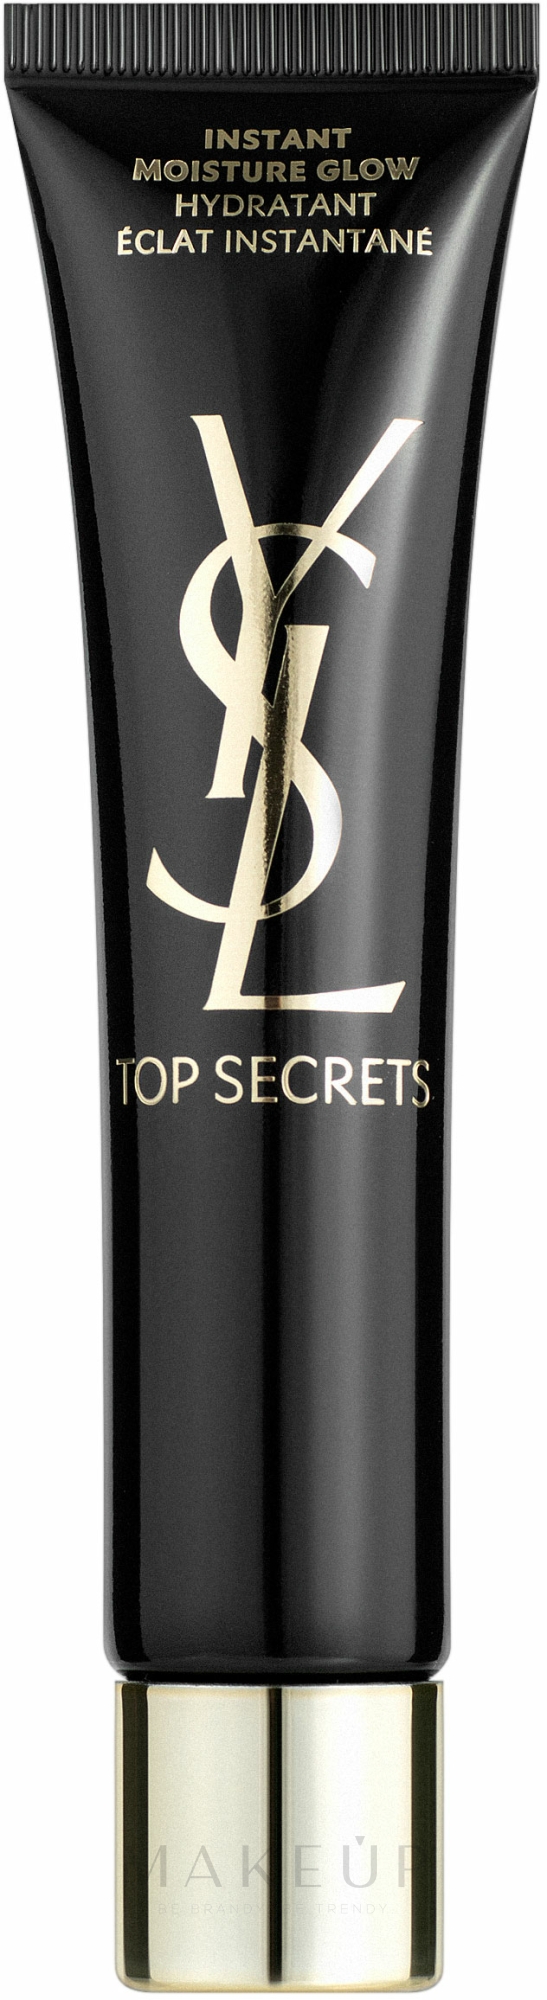 Feuchtigkeitsspendende Grundierung - Yves Saint Laurent Top Secrets Instant Moisture Glow Makeup — Bild 40 ml